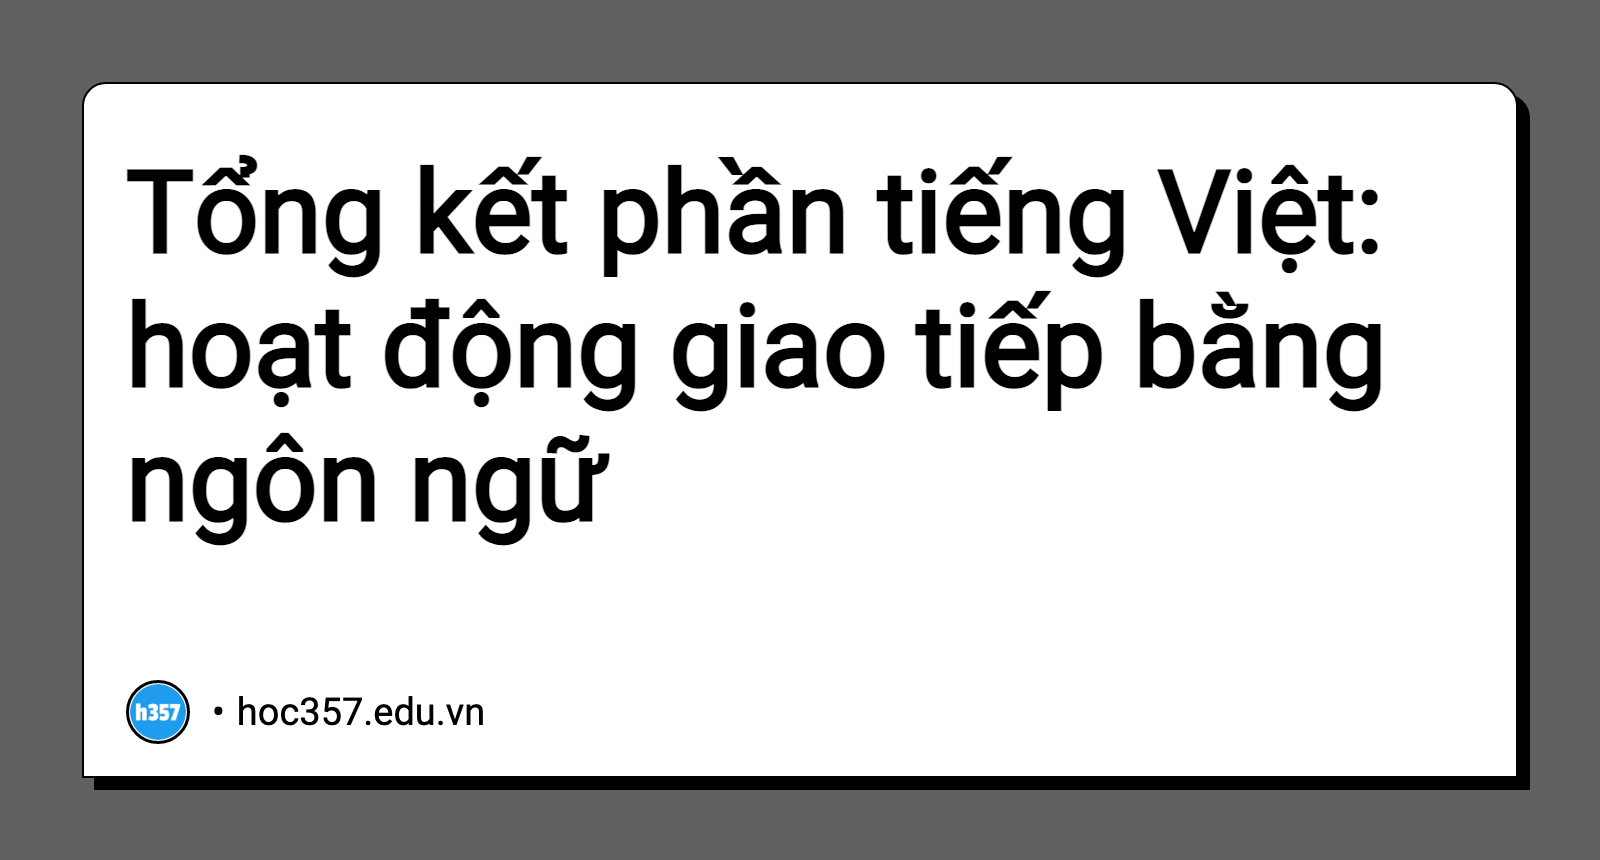 Hình minh họa Tổng kết phần tiếng Việt: hoạt động giao tiếp bằng ngôn ngữ